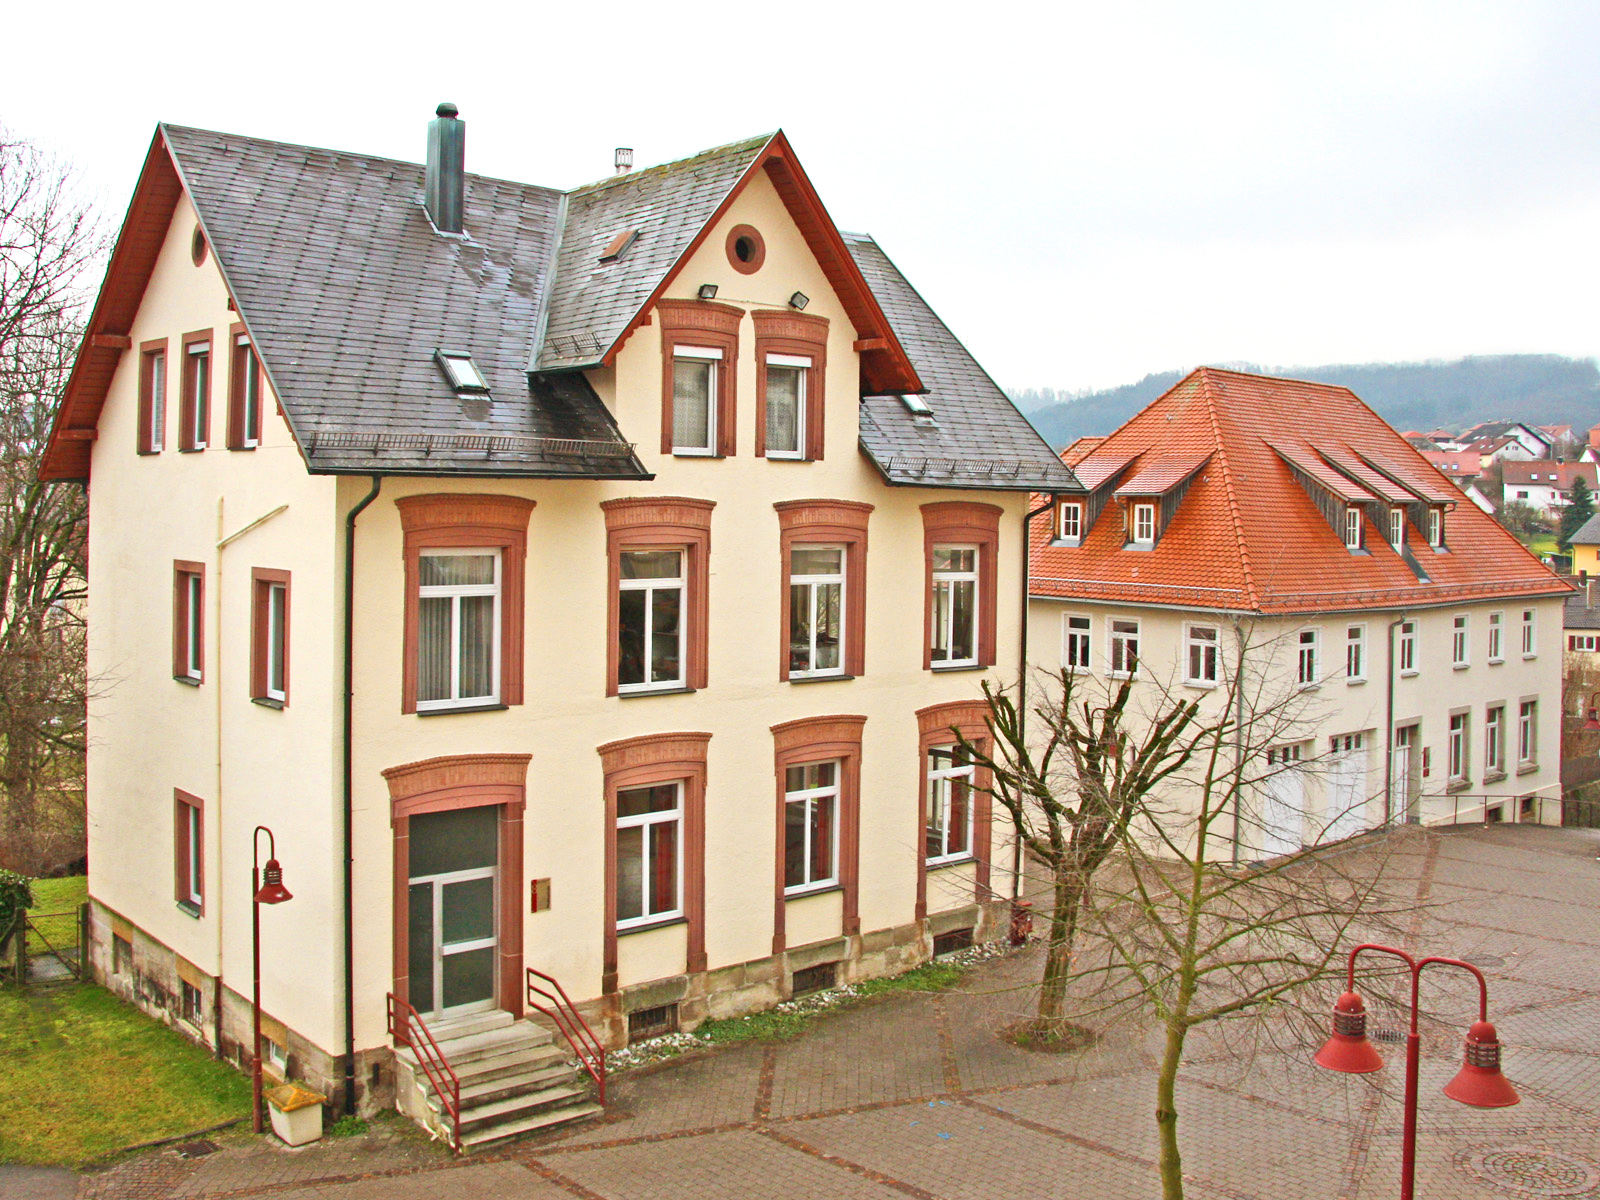  Musikschule-Haus-Krill-Buergerhaus 